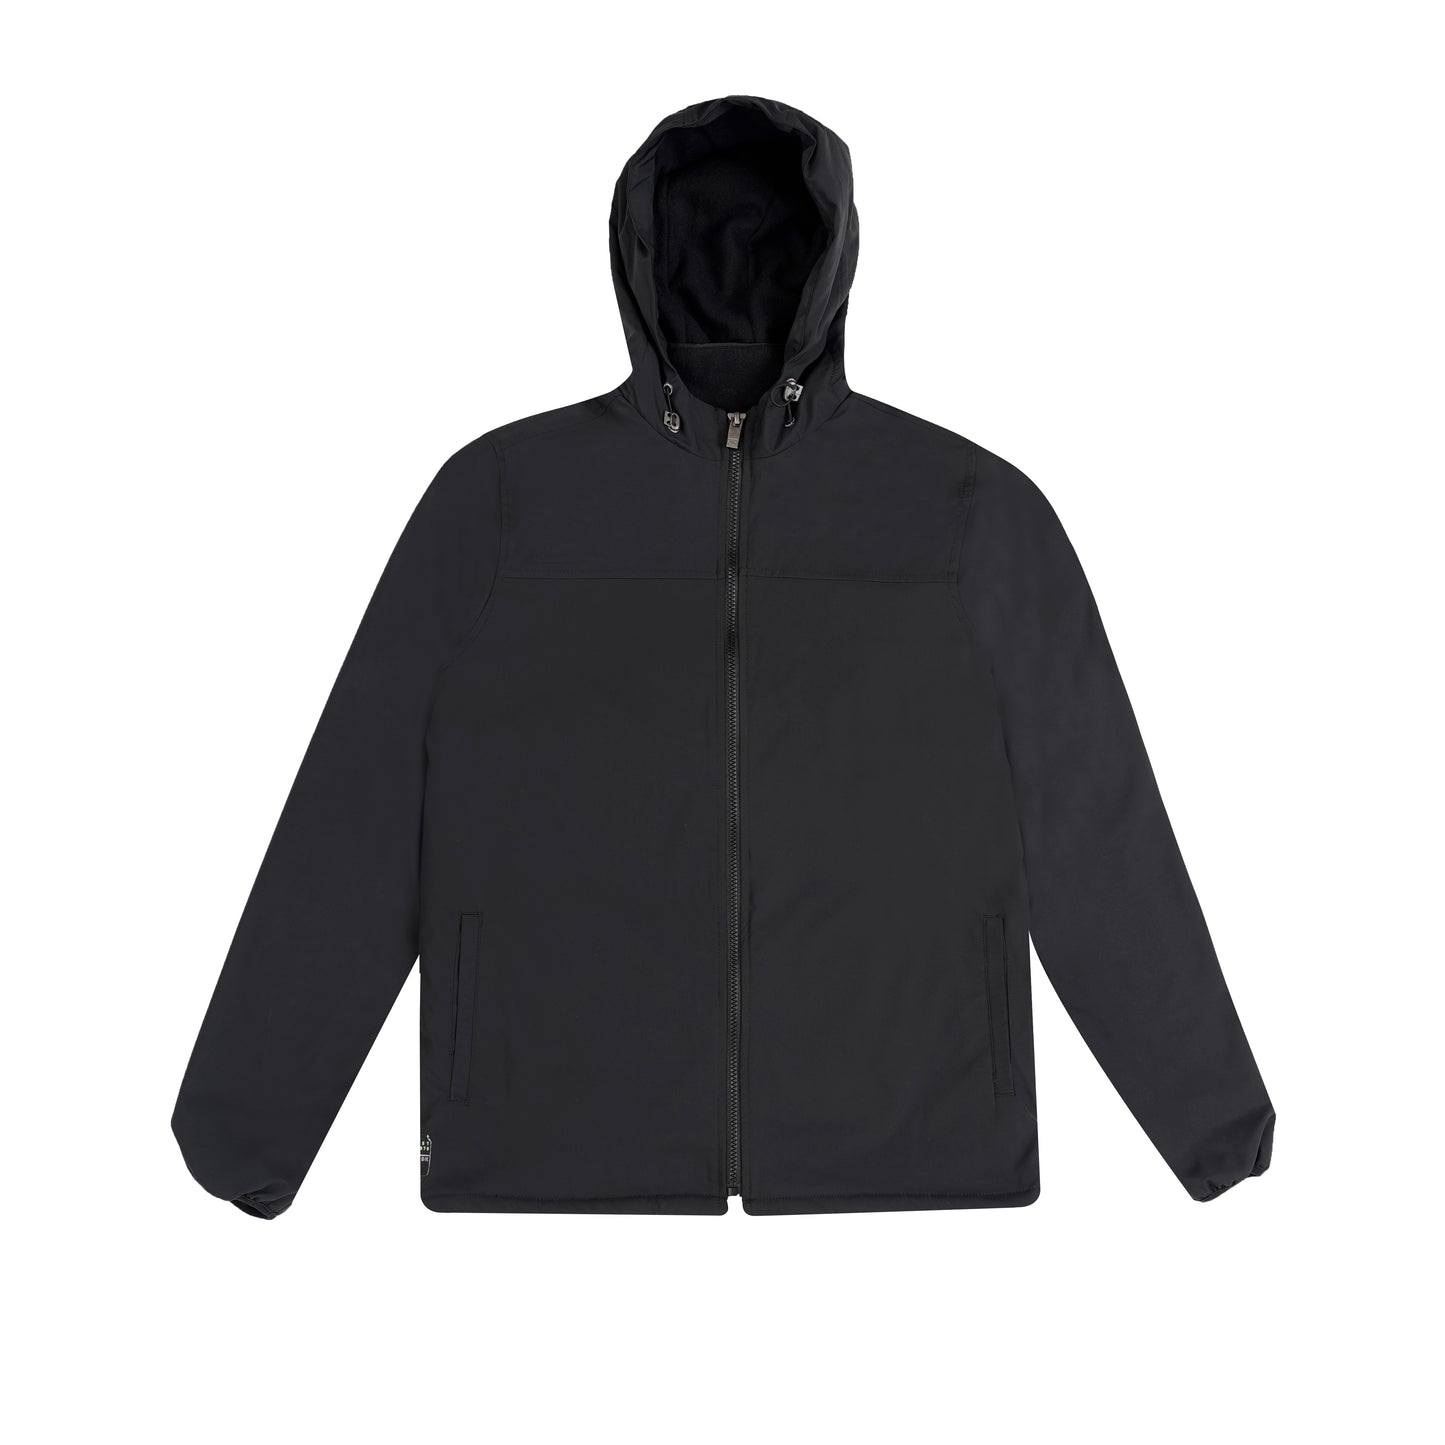 Buy Mens black hoodie jacket in dubai